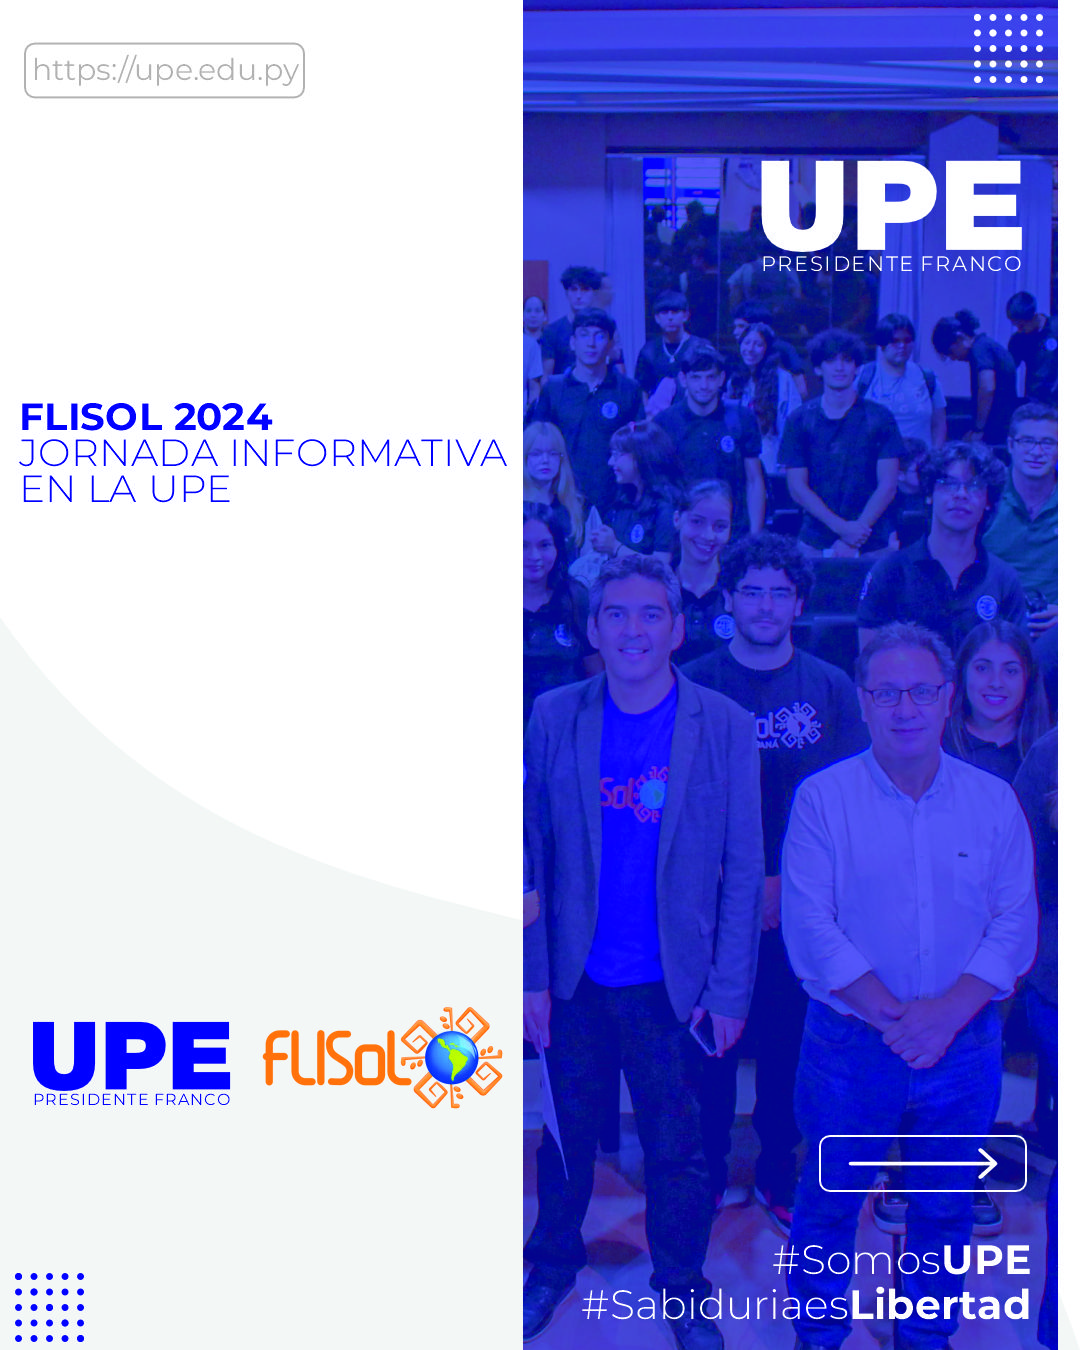 UPE Anfitriona el Festival Latinoamericano de Instalación de Software Libre 